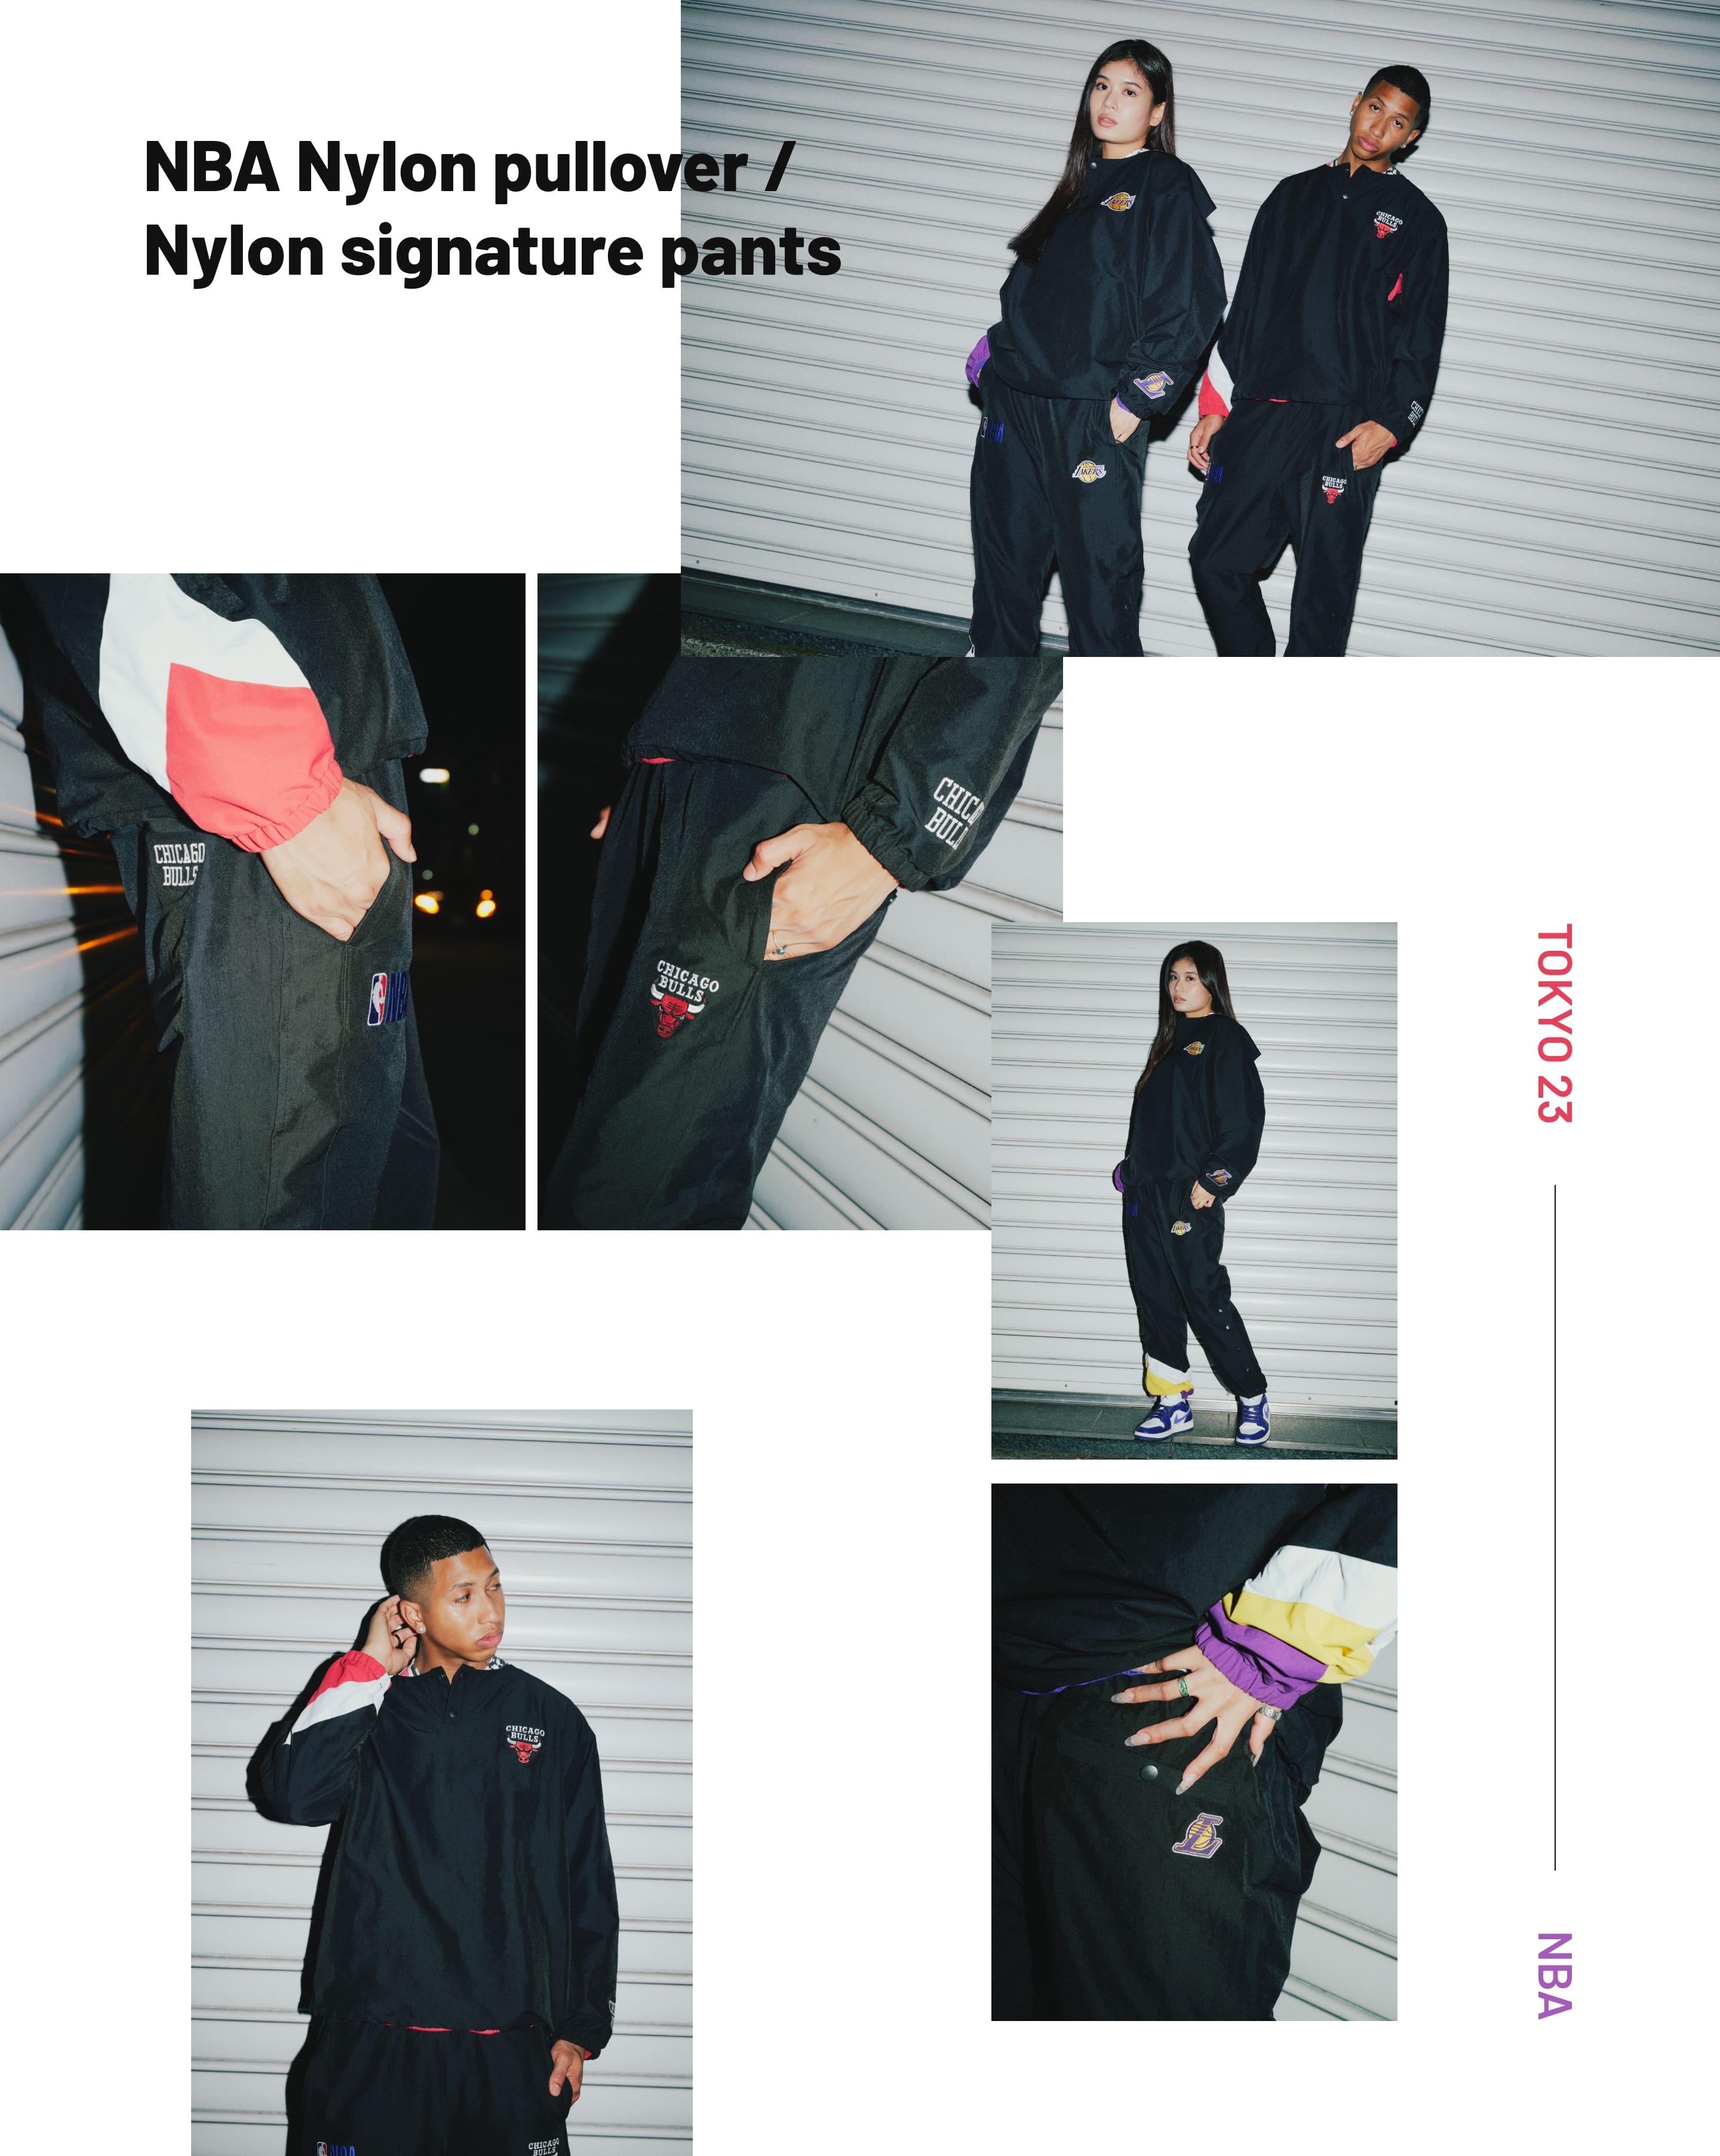 NBA Nylon pullover / Nylon signature pants